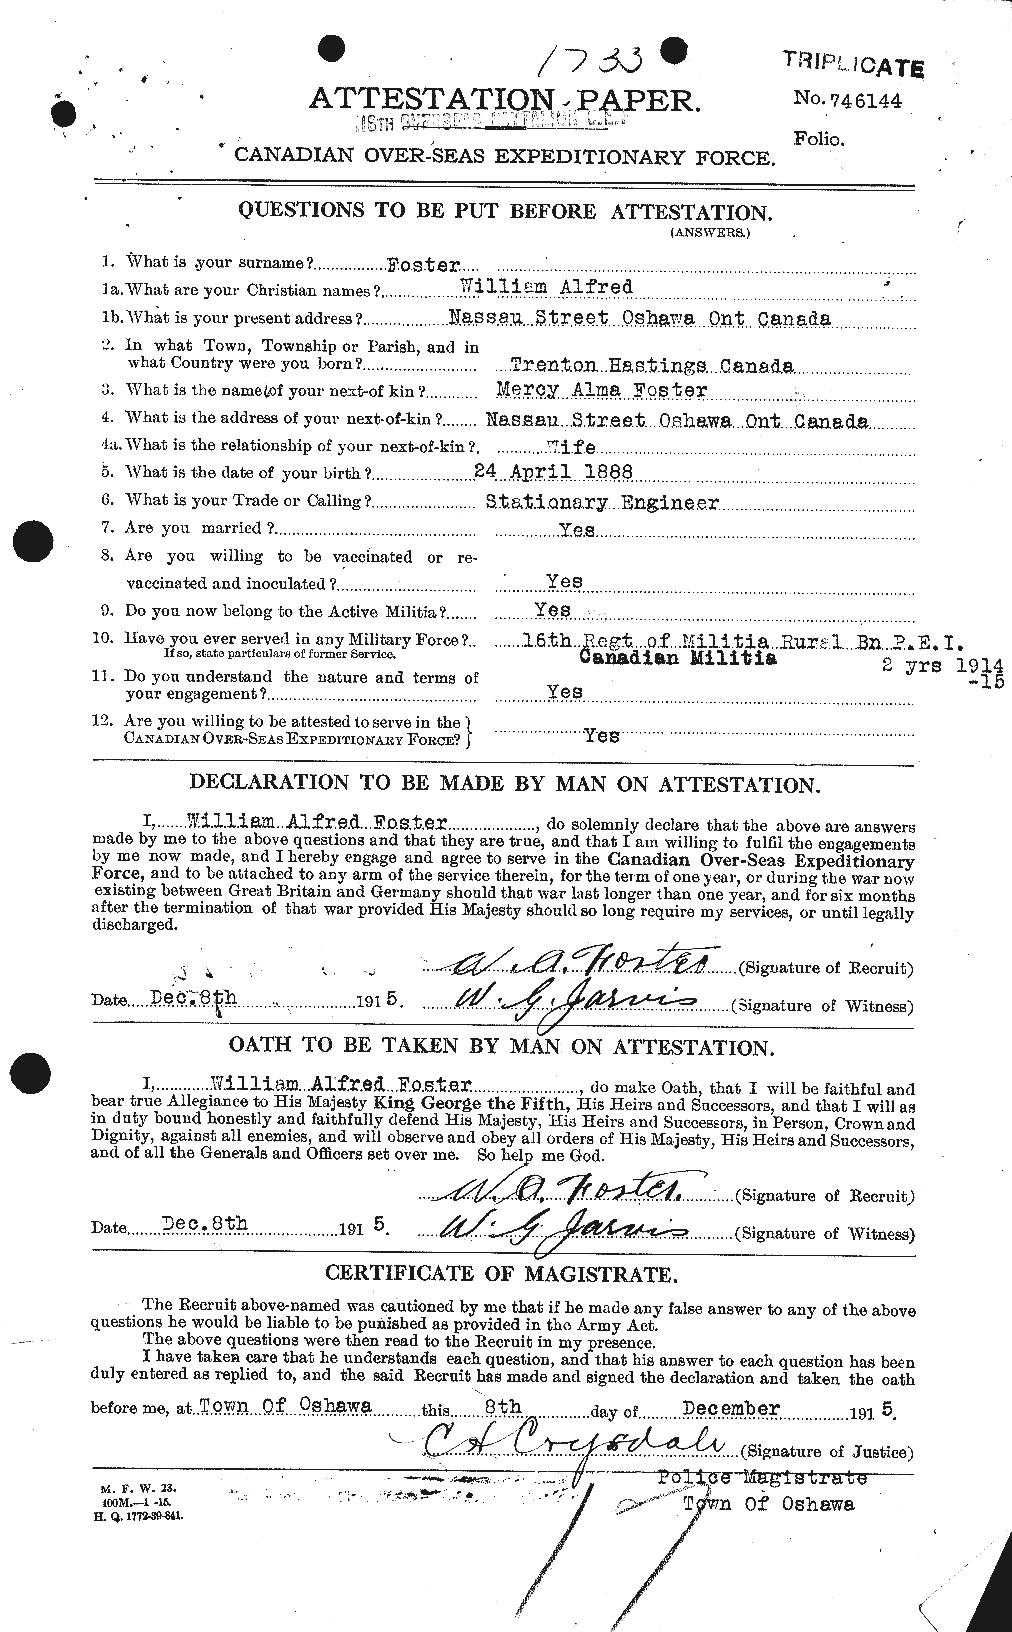 Dossiers du Personnel de la Première Guerre mondiale - CEC 328726a